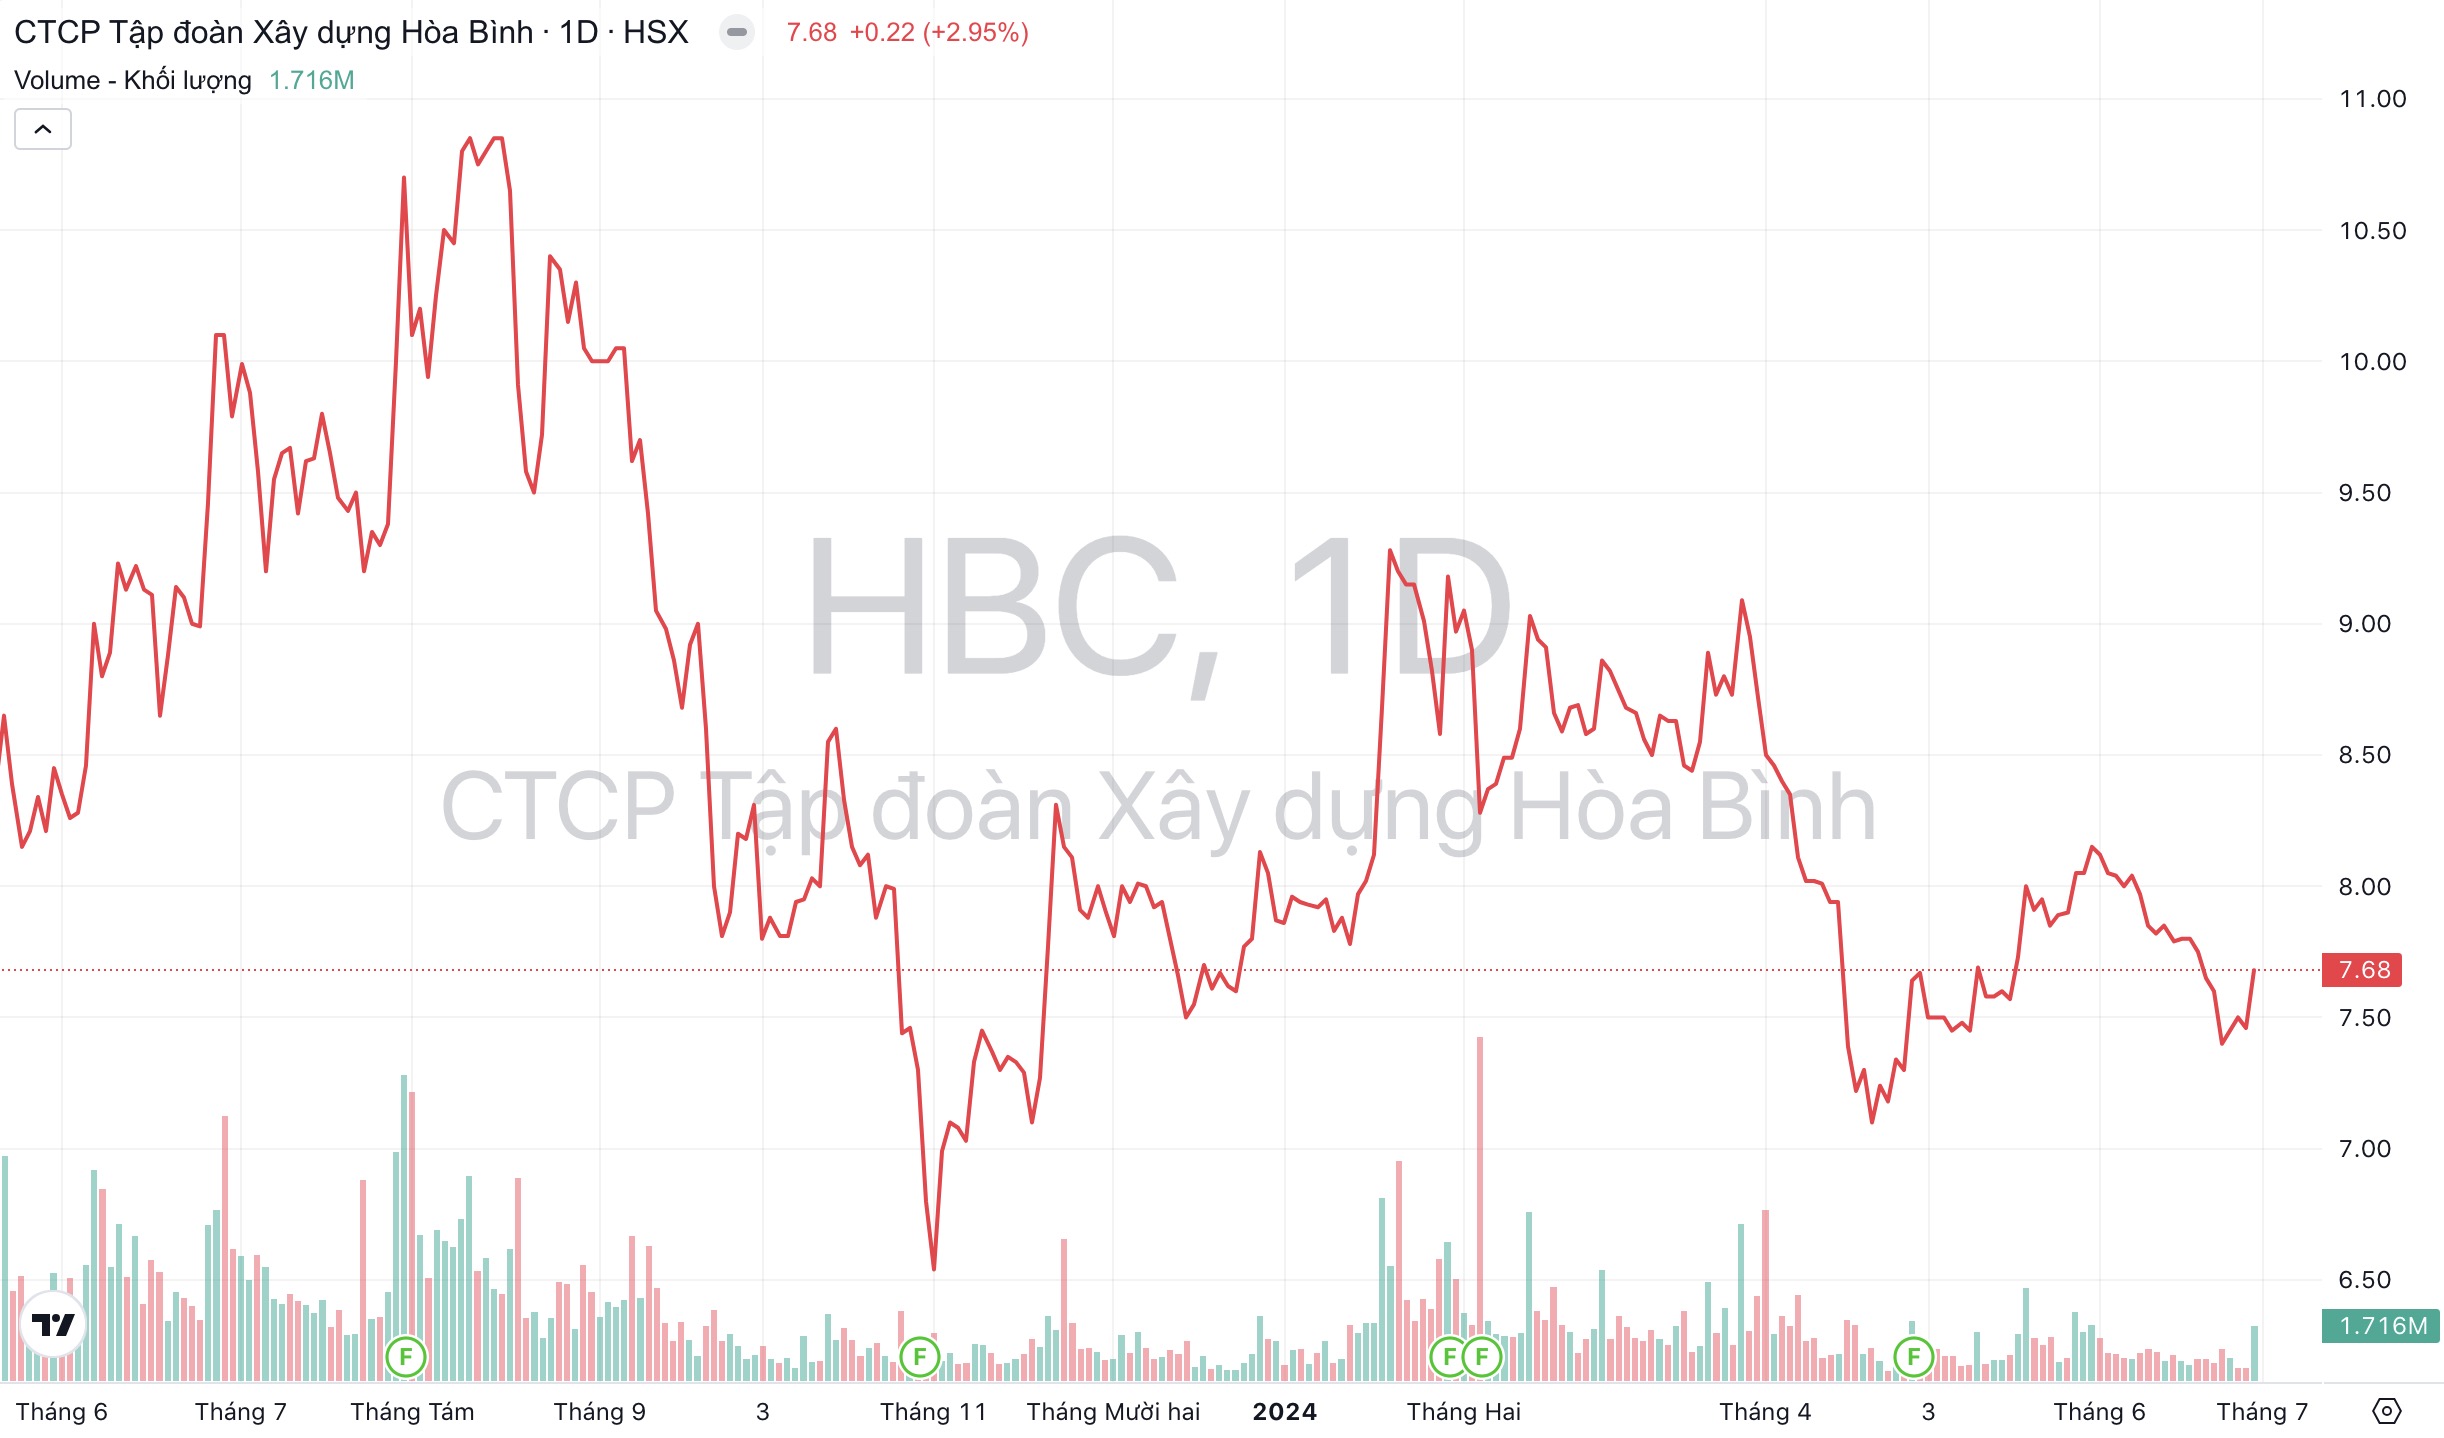 Giá cổ phiếu HBC Xây dựng Hòa Bình